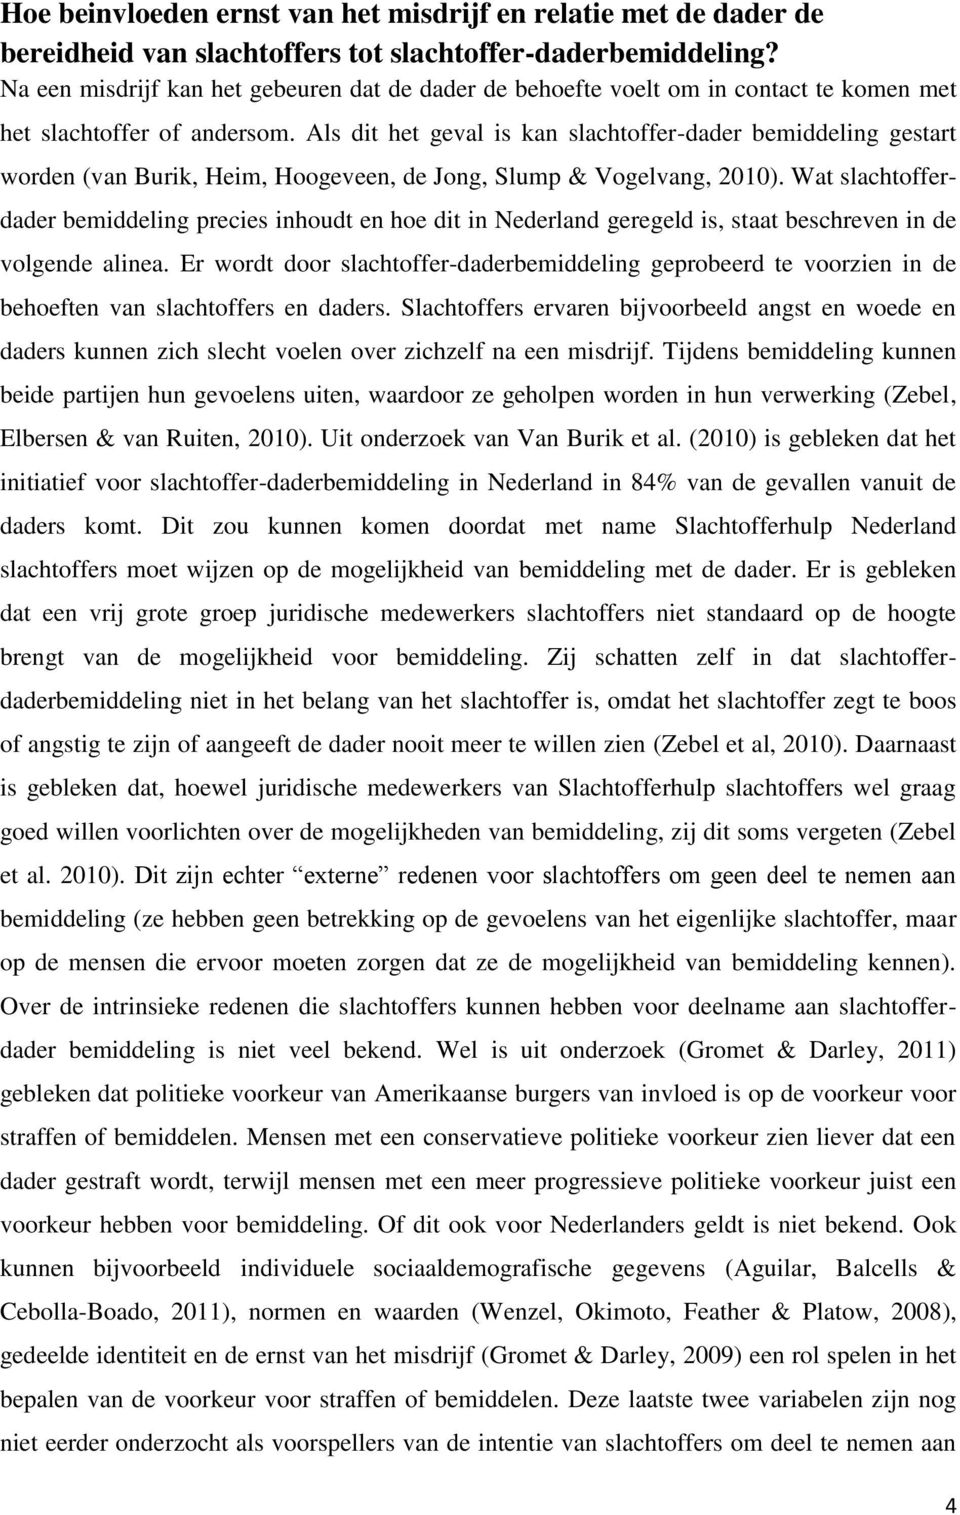 Als dit het geval is kan slachtoffer-dader bemiddeling gestart worden (van Burik, Heim, Hoogeveen, de Jong, Slump & Vogelvang, 2010).